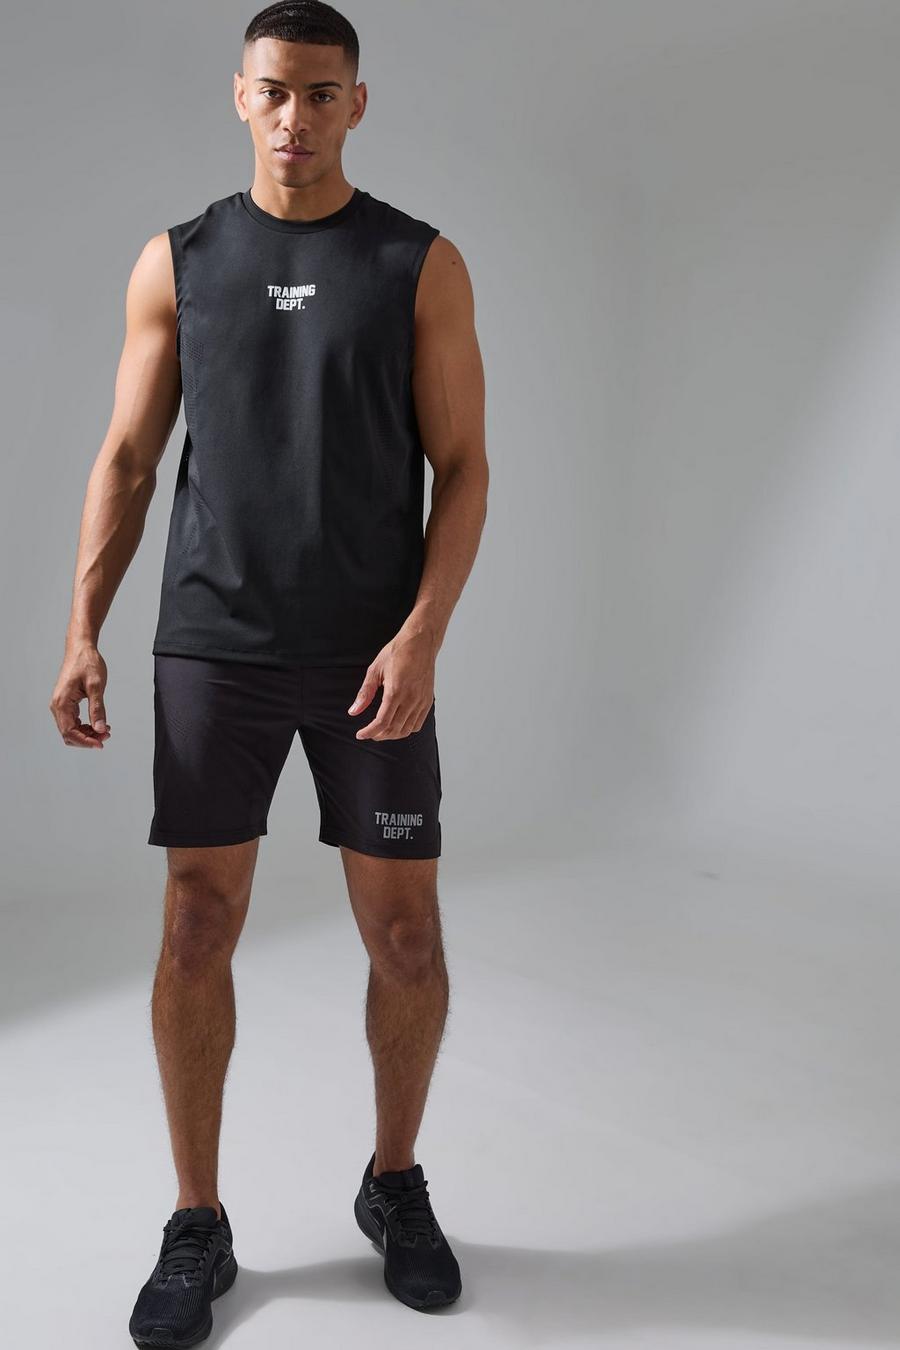 Conjunto de pantalón corto y top sin mangas perforado Active Training Dept, Black